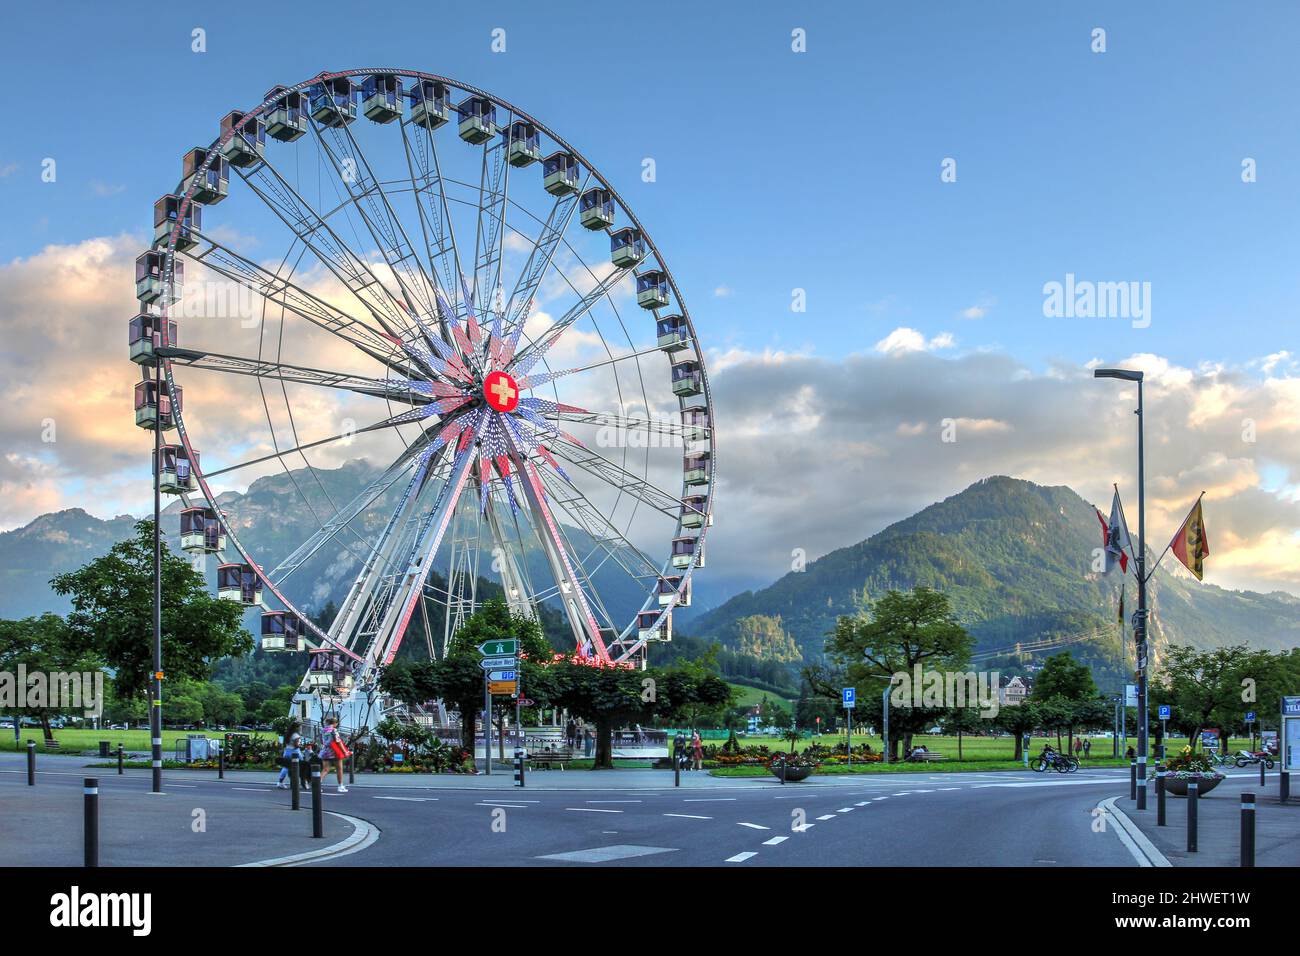 Giant Ferris Wheel installed in Höhematte Park in Interlaken, Switzerland during summer time. Stock Photo